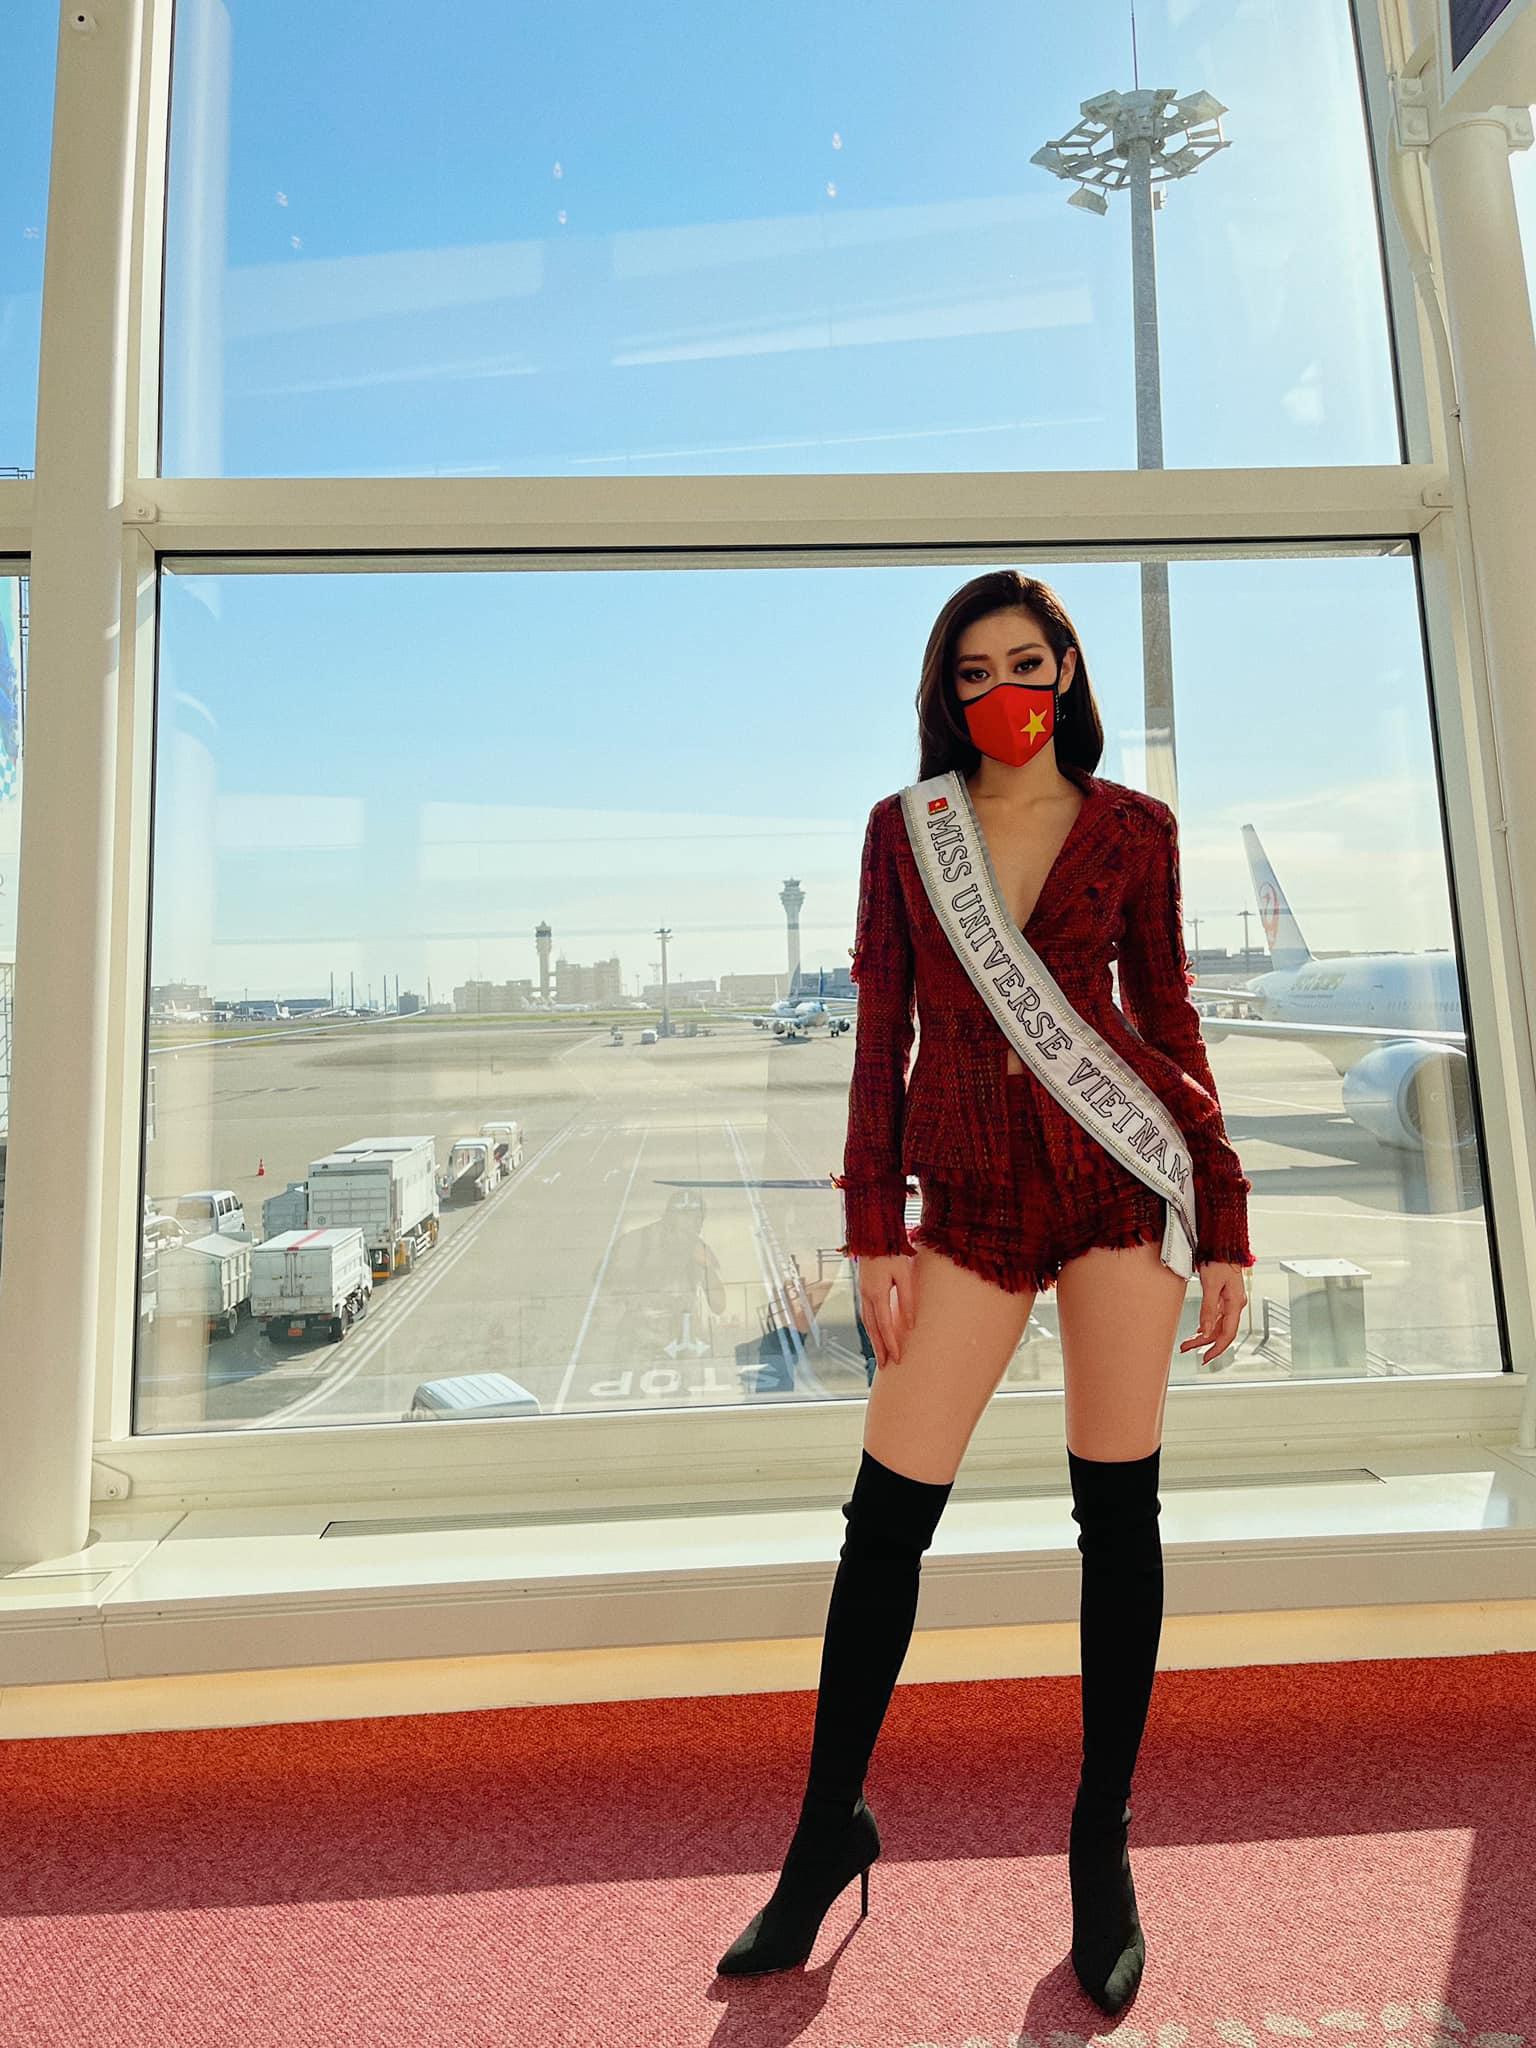 Hoa hậu Khánh Vân liên tục biến hóa phong cách thời trang sân bay khi lên đường sang Mỹ dự thi Miss Universe 2020 - Ảnh 16.